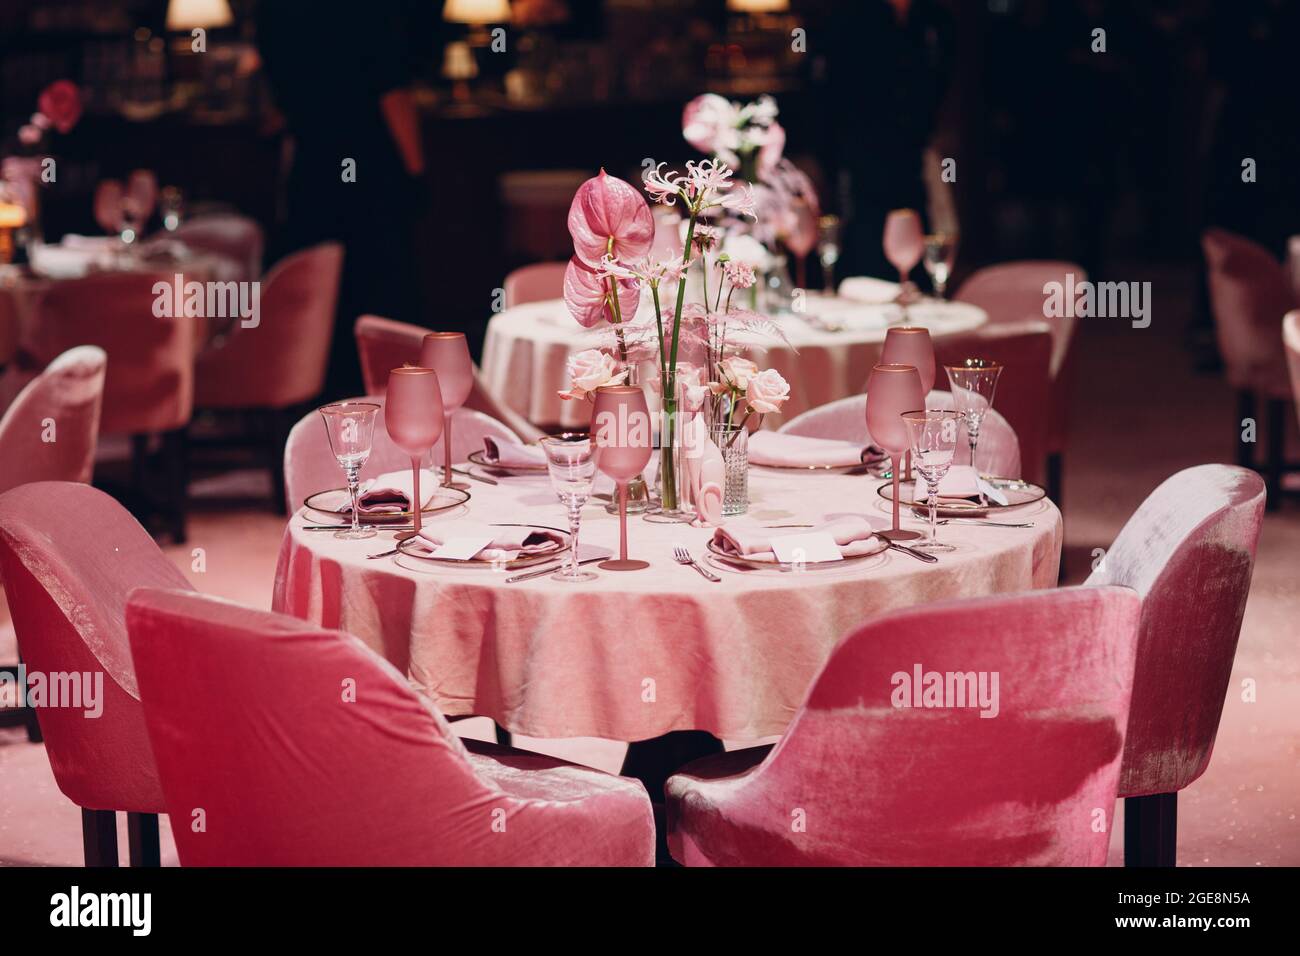 Dîner romantique table au décor rose au restaurant. Banque D'Images